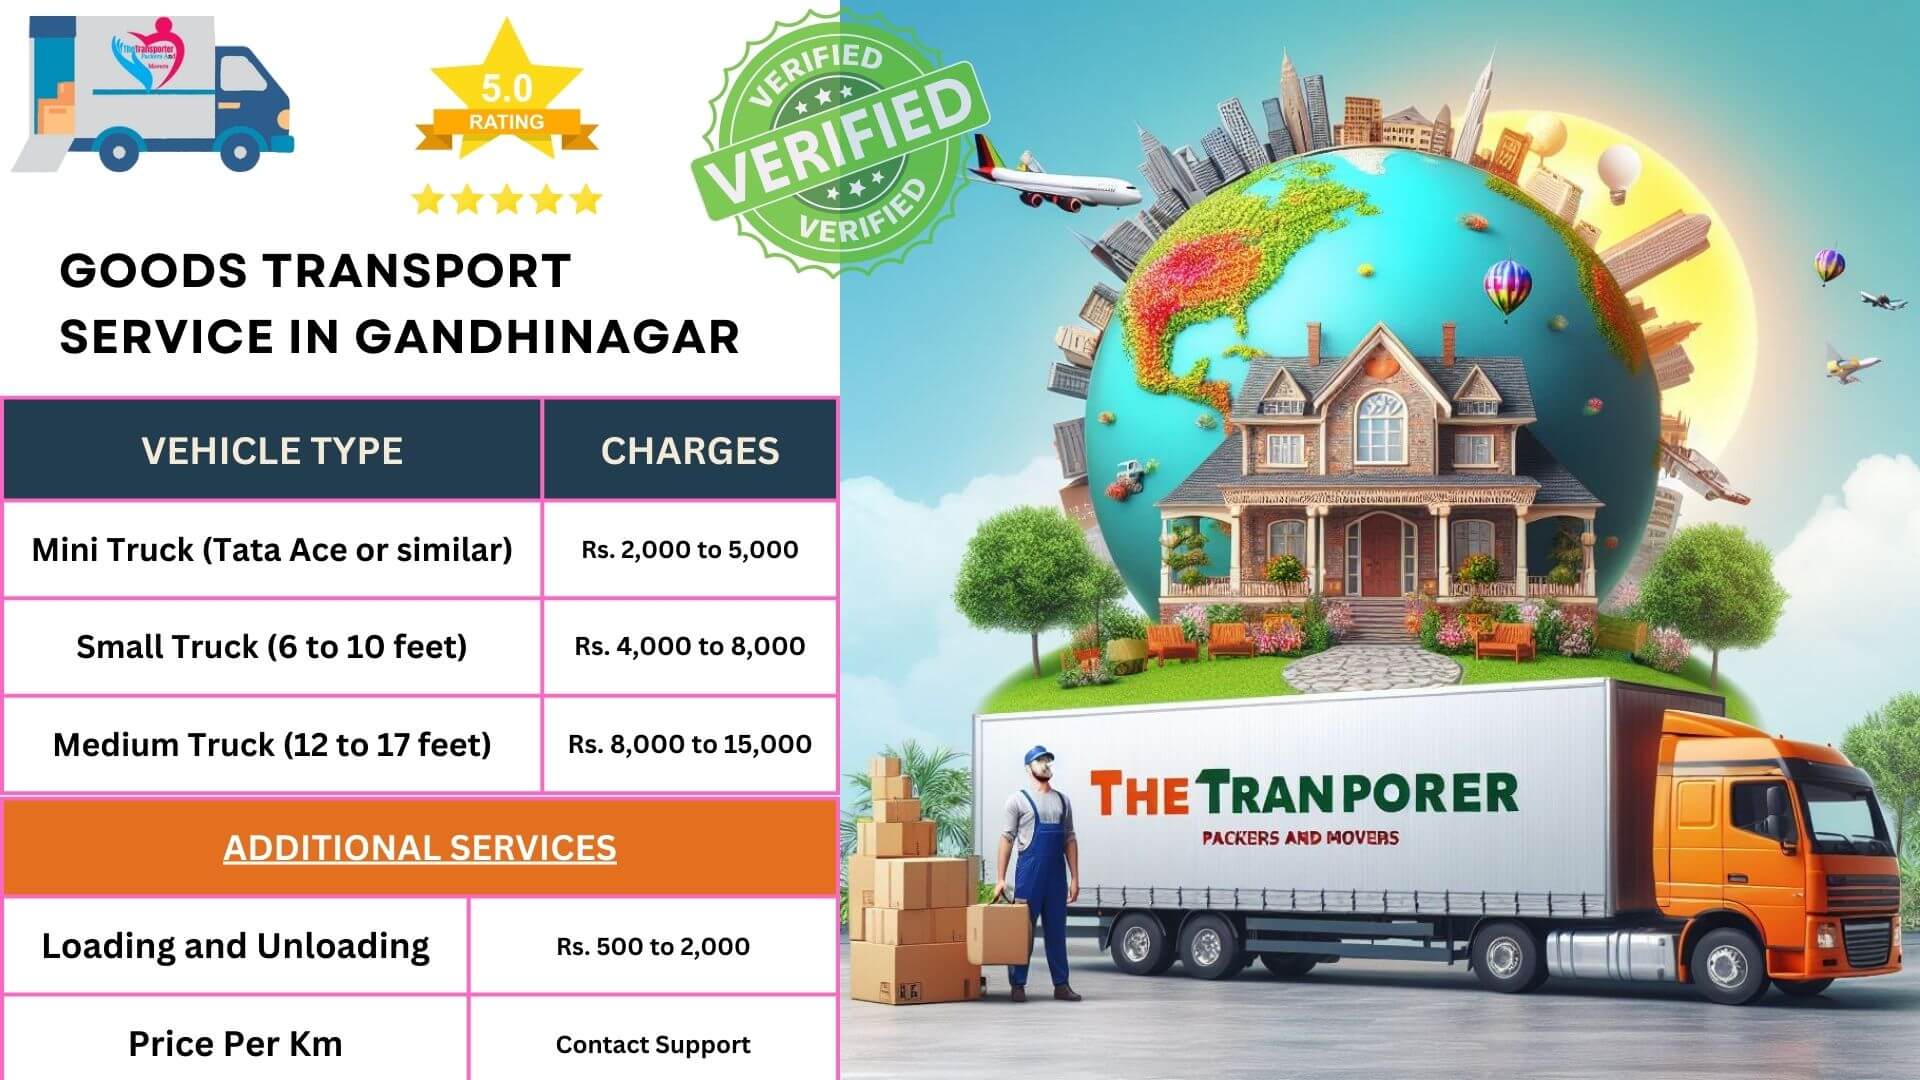 Goods transport services in Gandhinagar